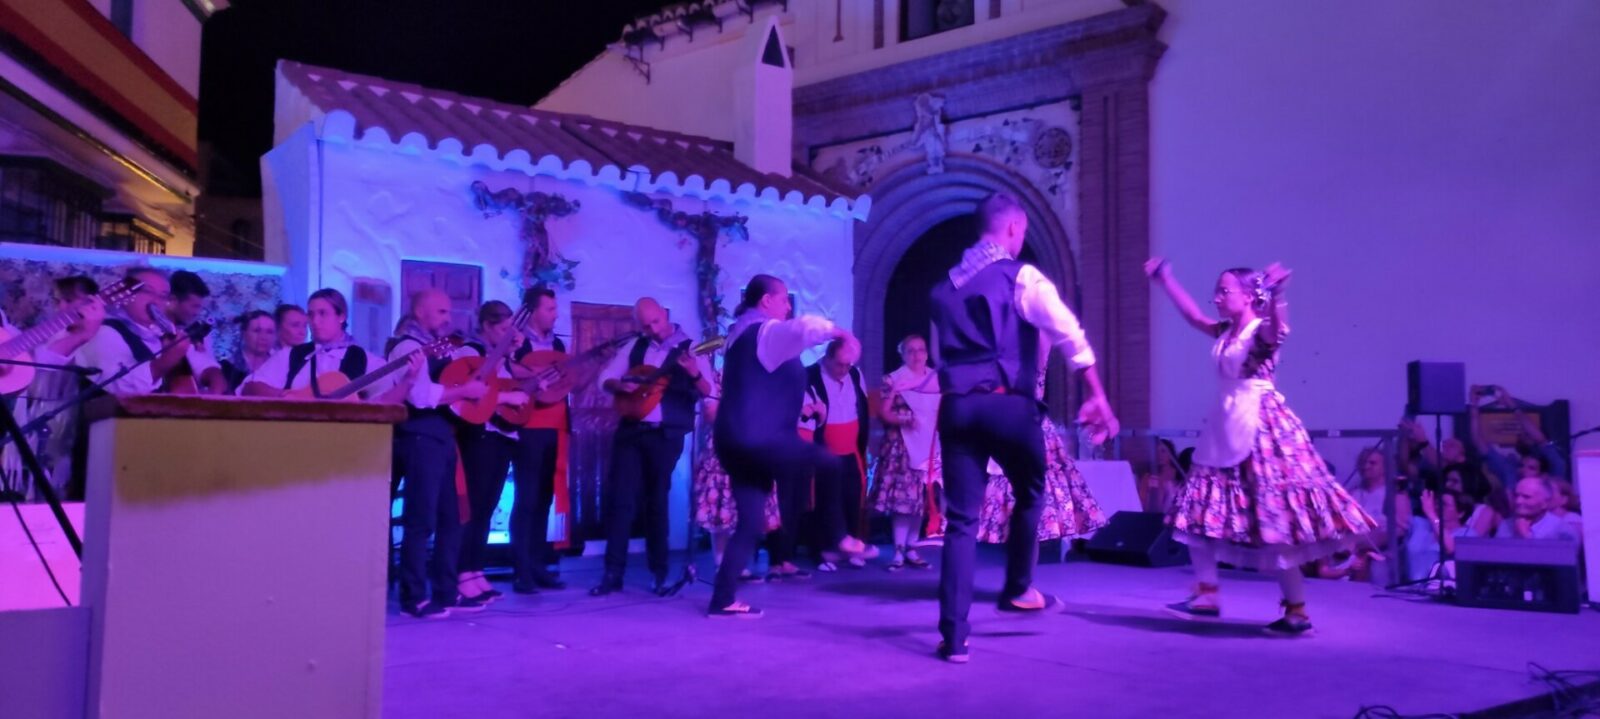 Noche del Vino night performances of local dances and music